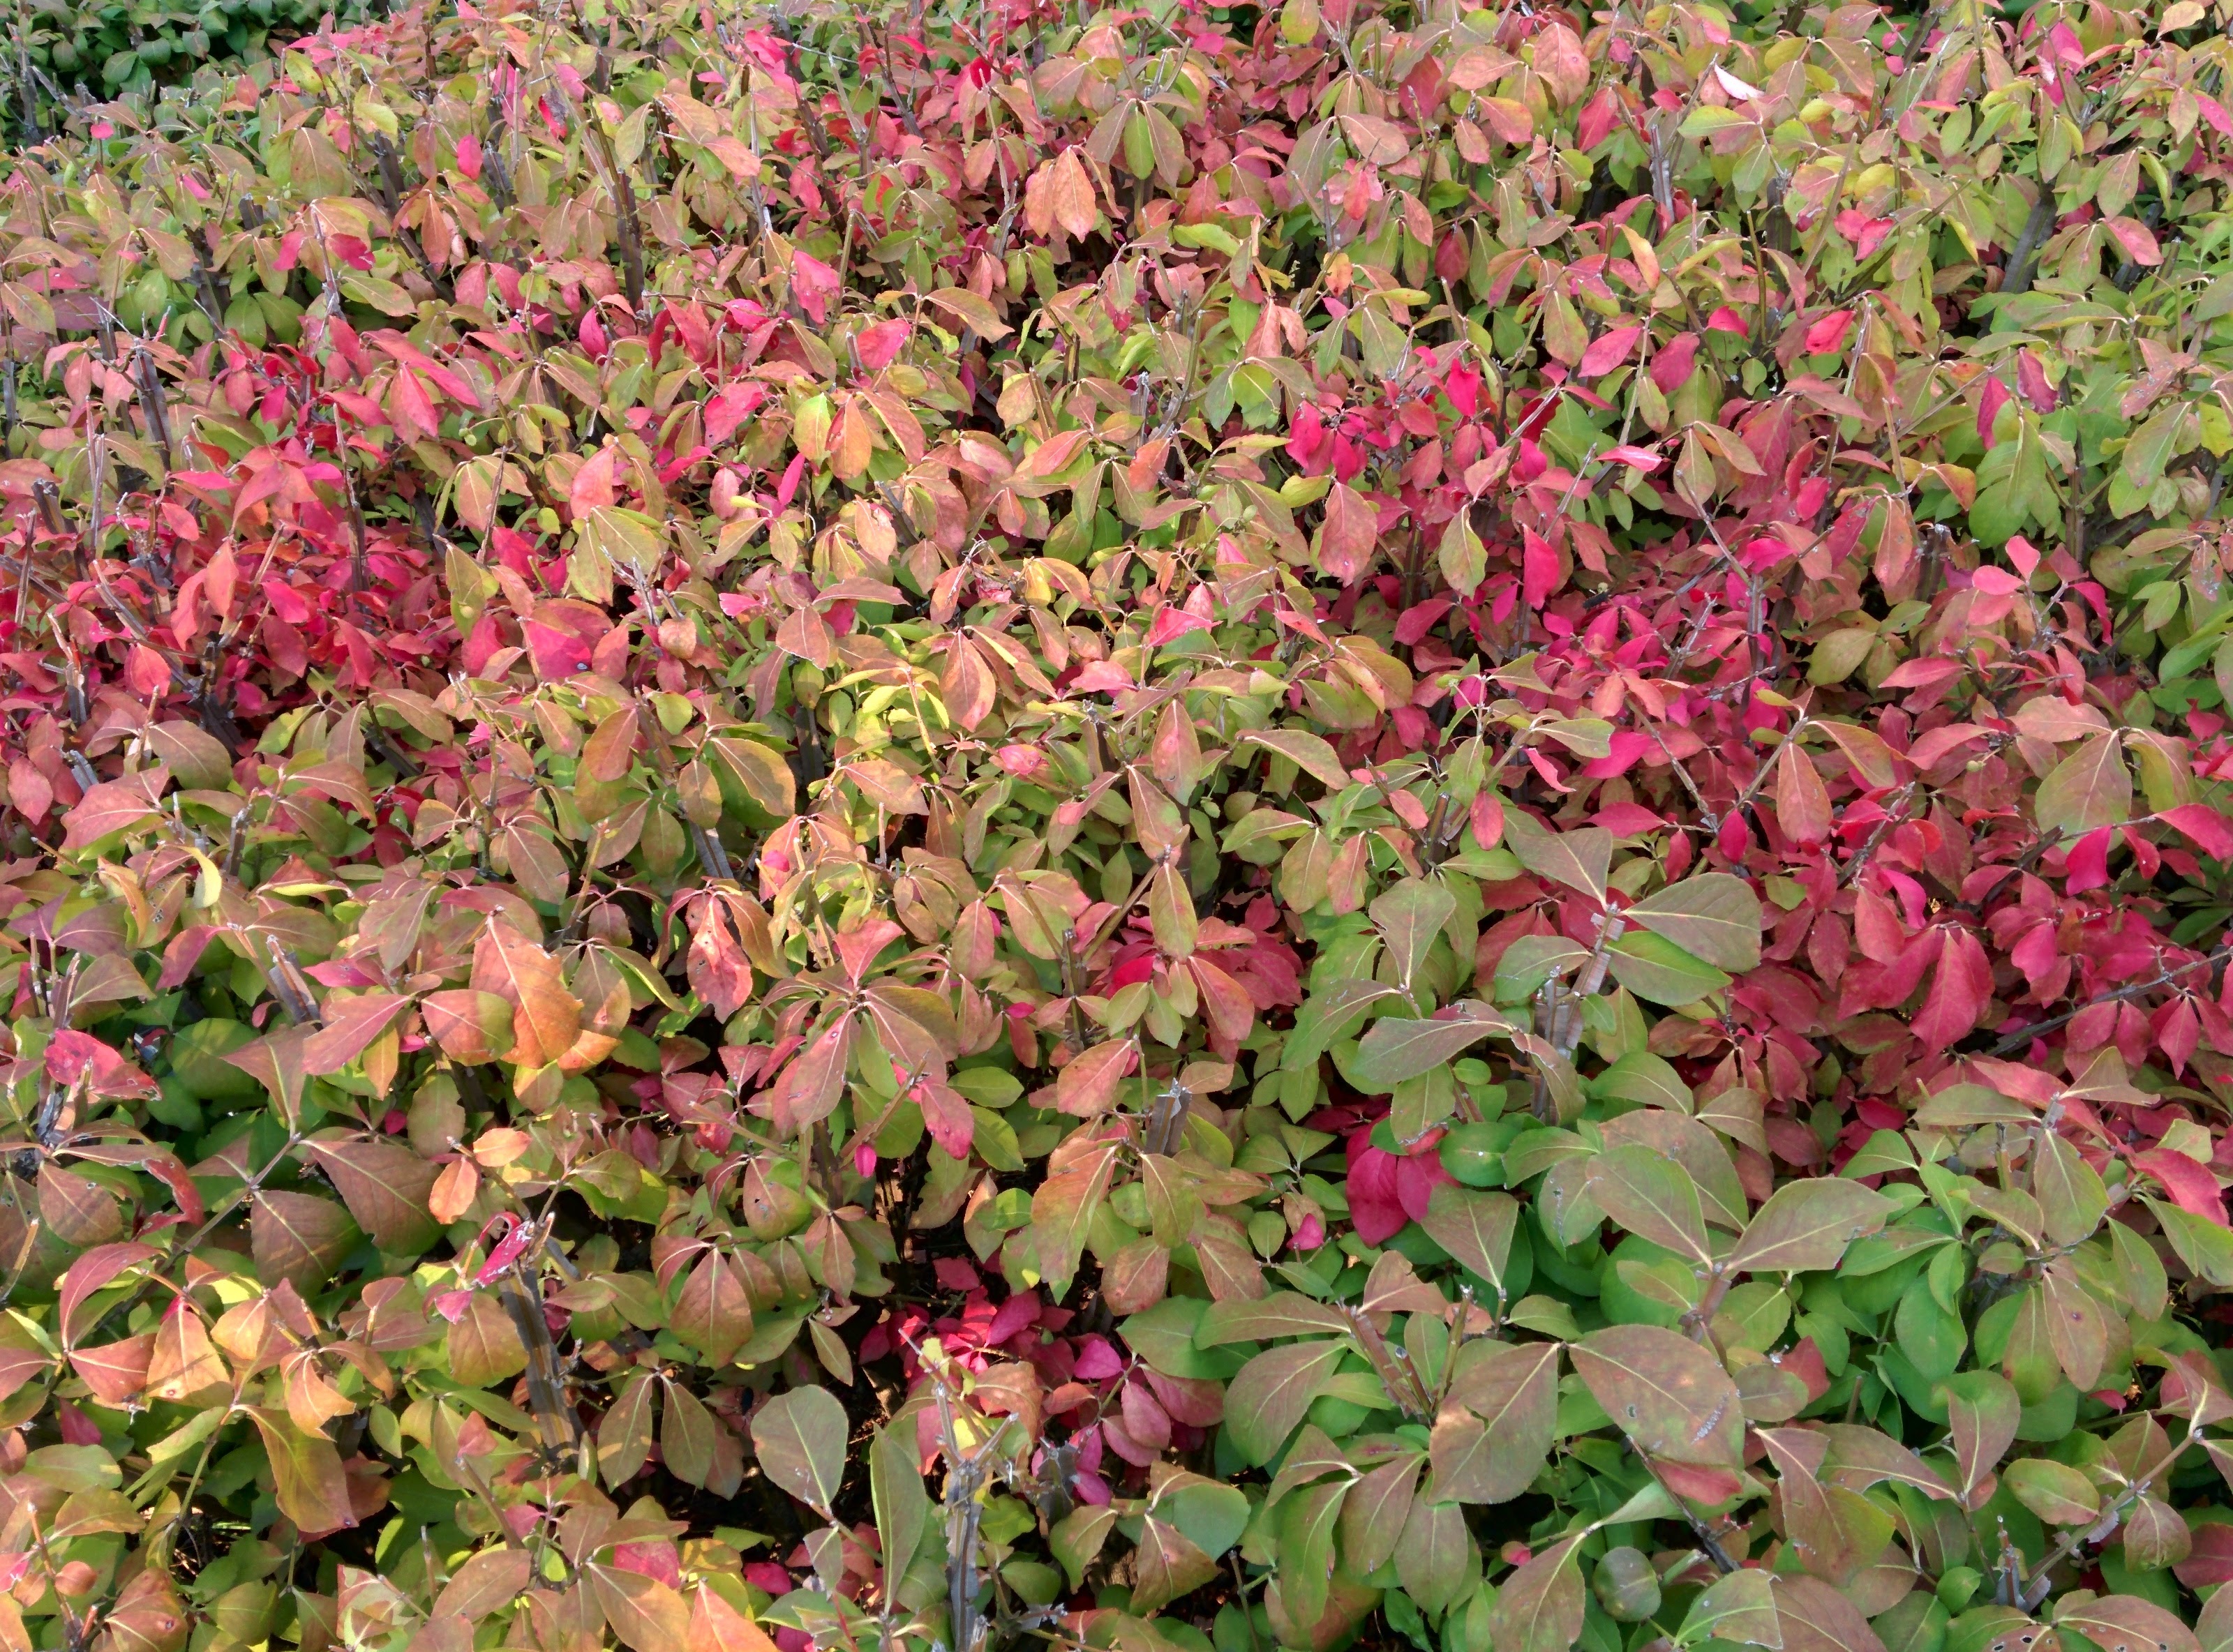 IMG_20151006_164807.jpg 붉게 단풍이 물드는 가을의 화살나무